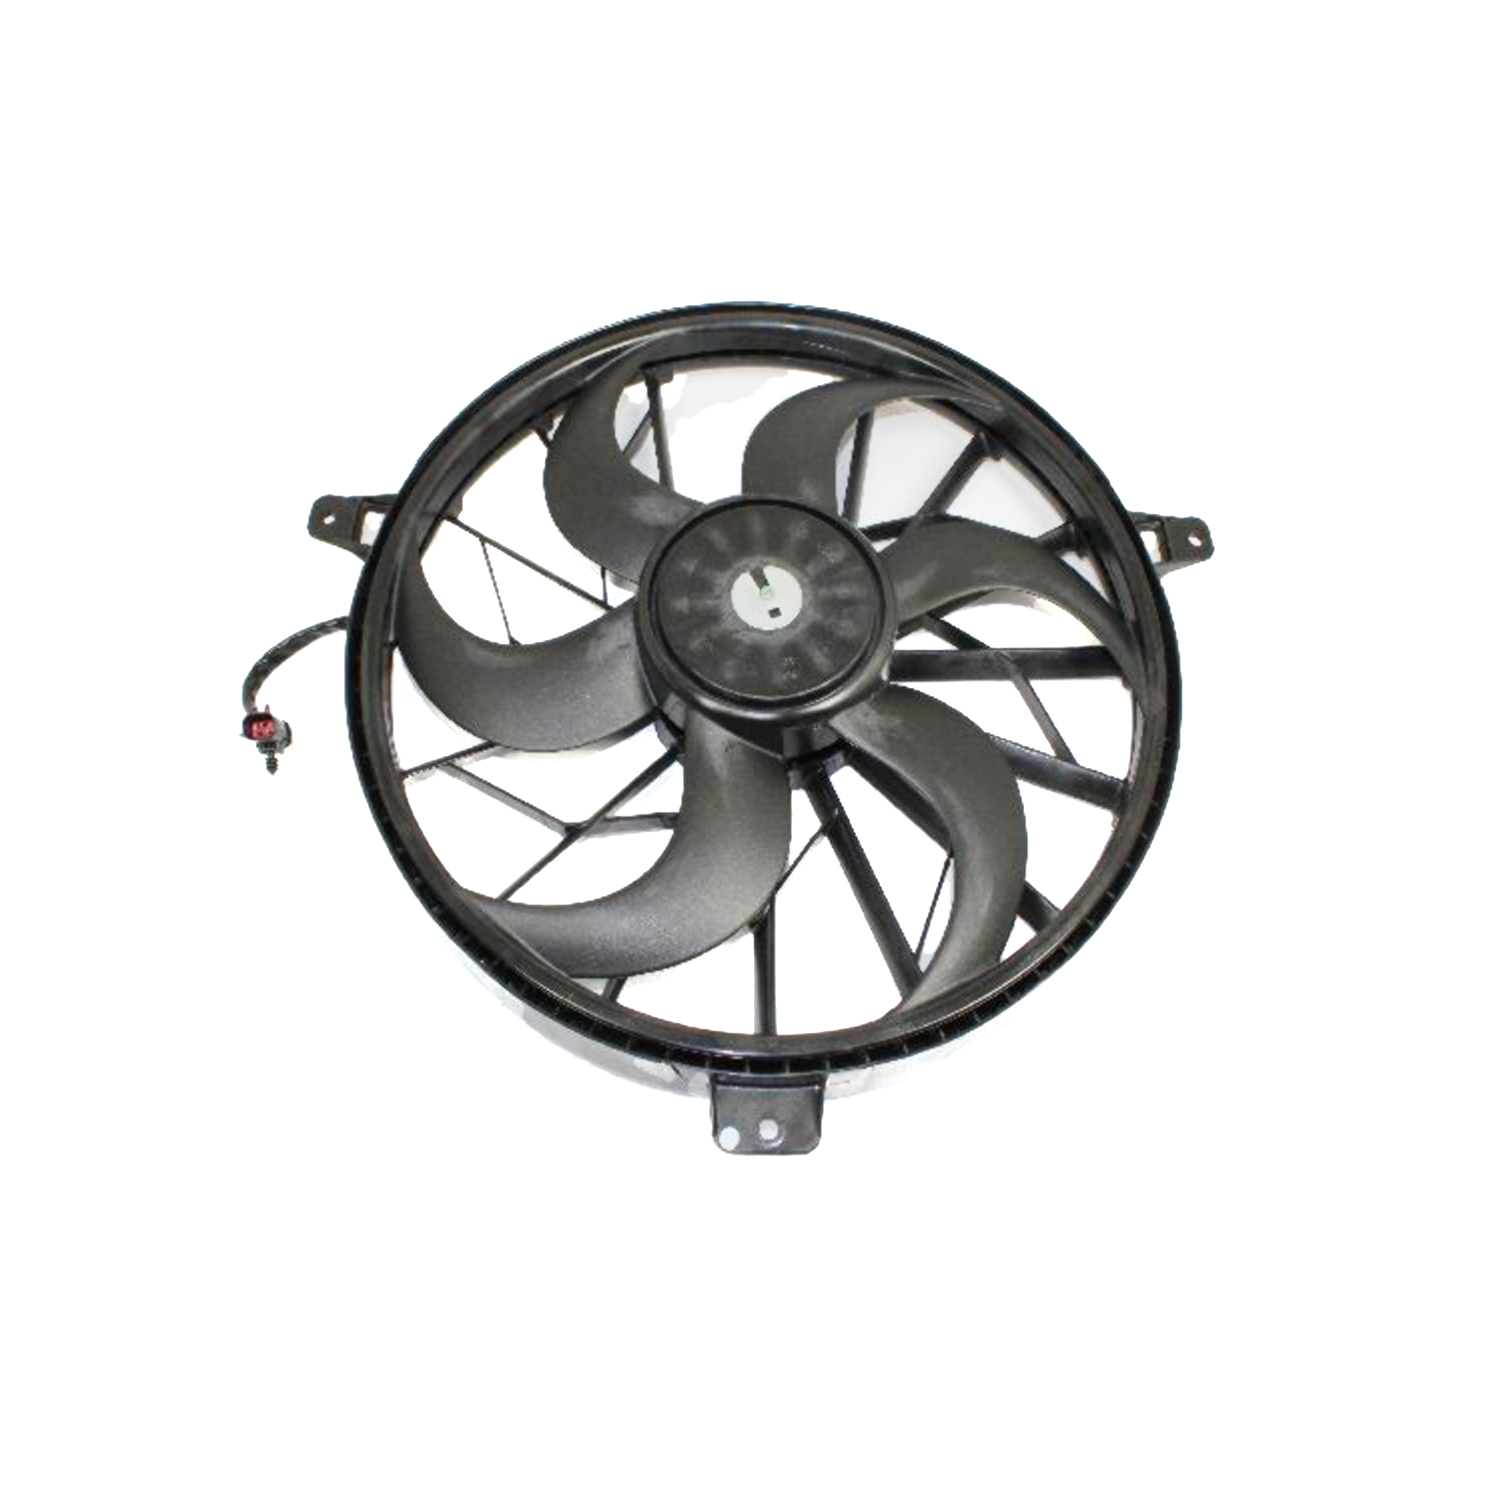 MOPAR PARTS - Engine Cooling Fan Assembly - MOP 52079528AB